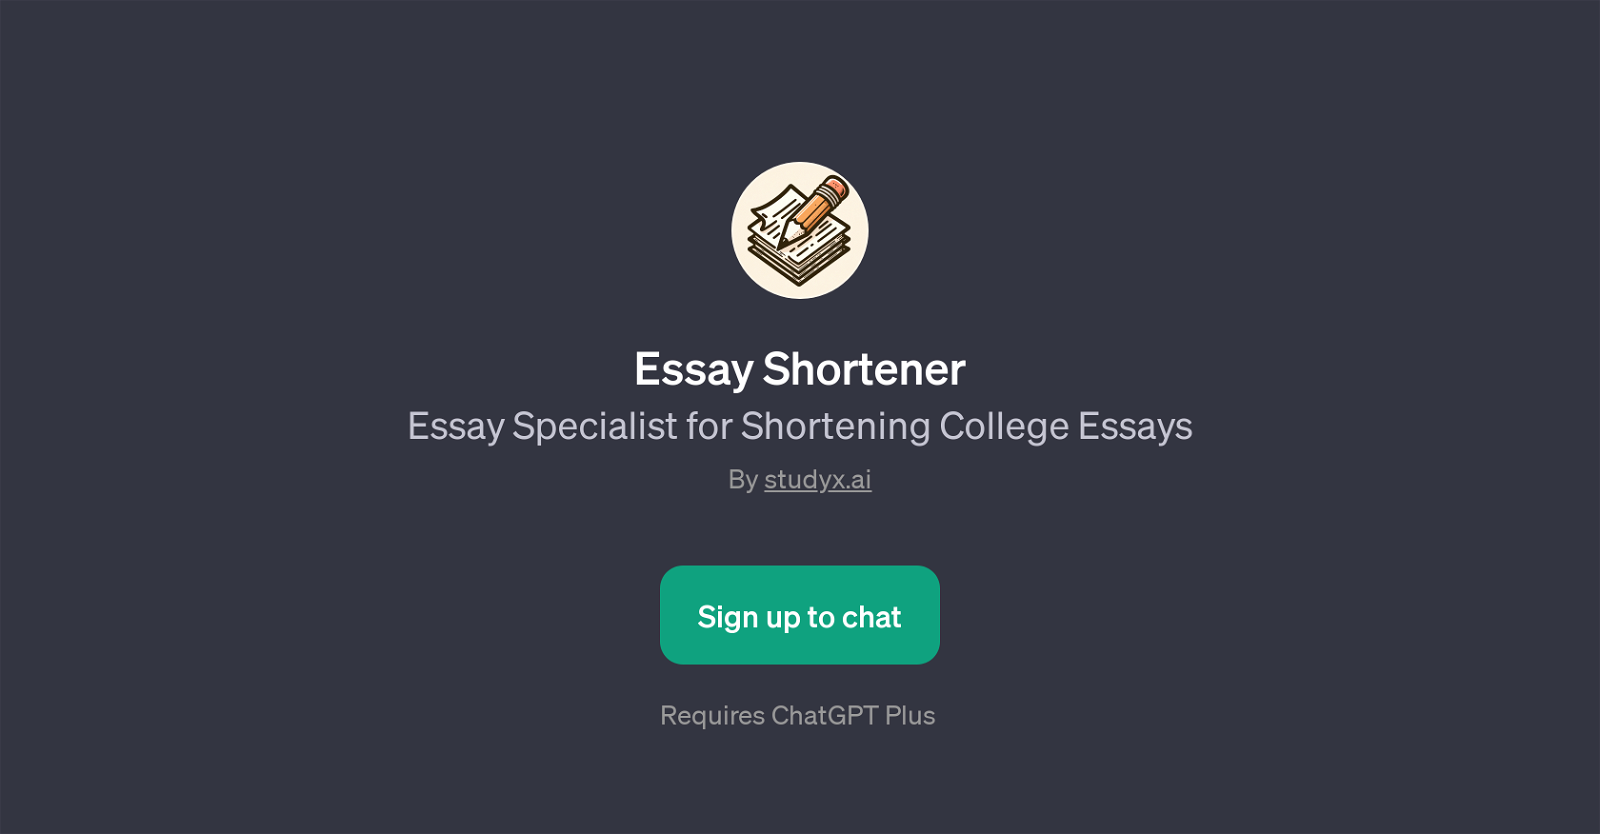 Essay Shortener website